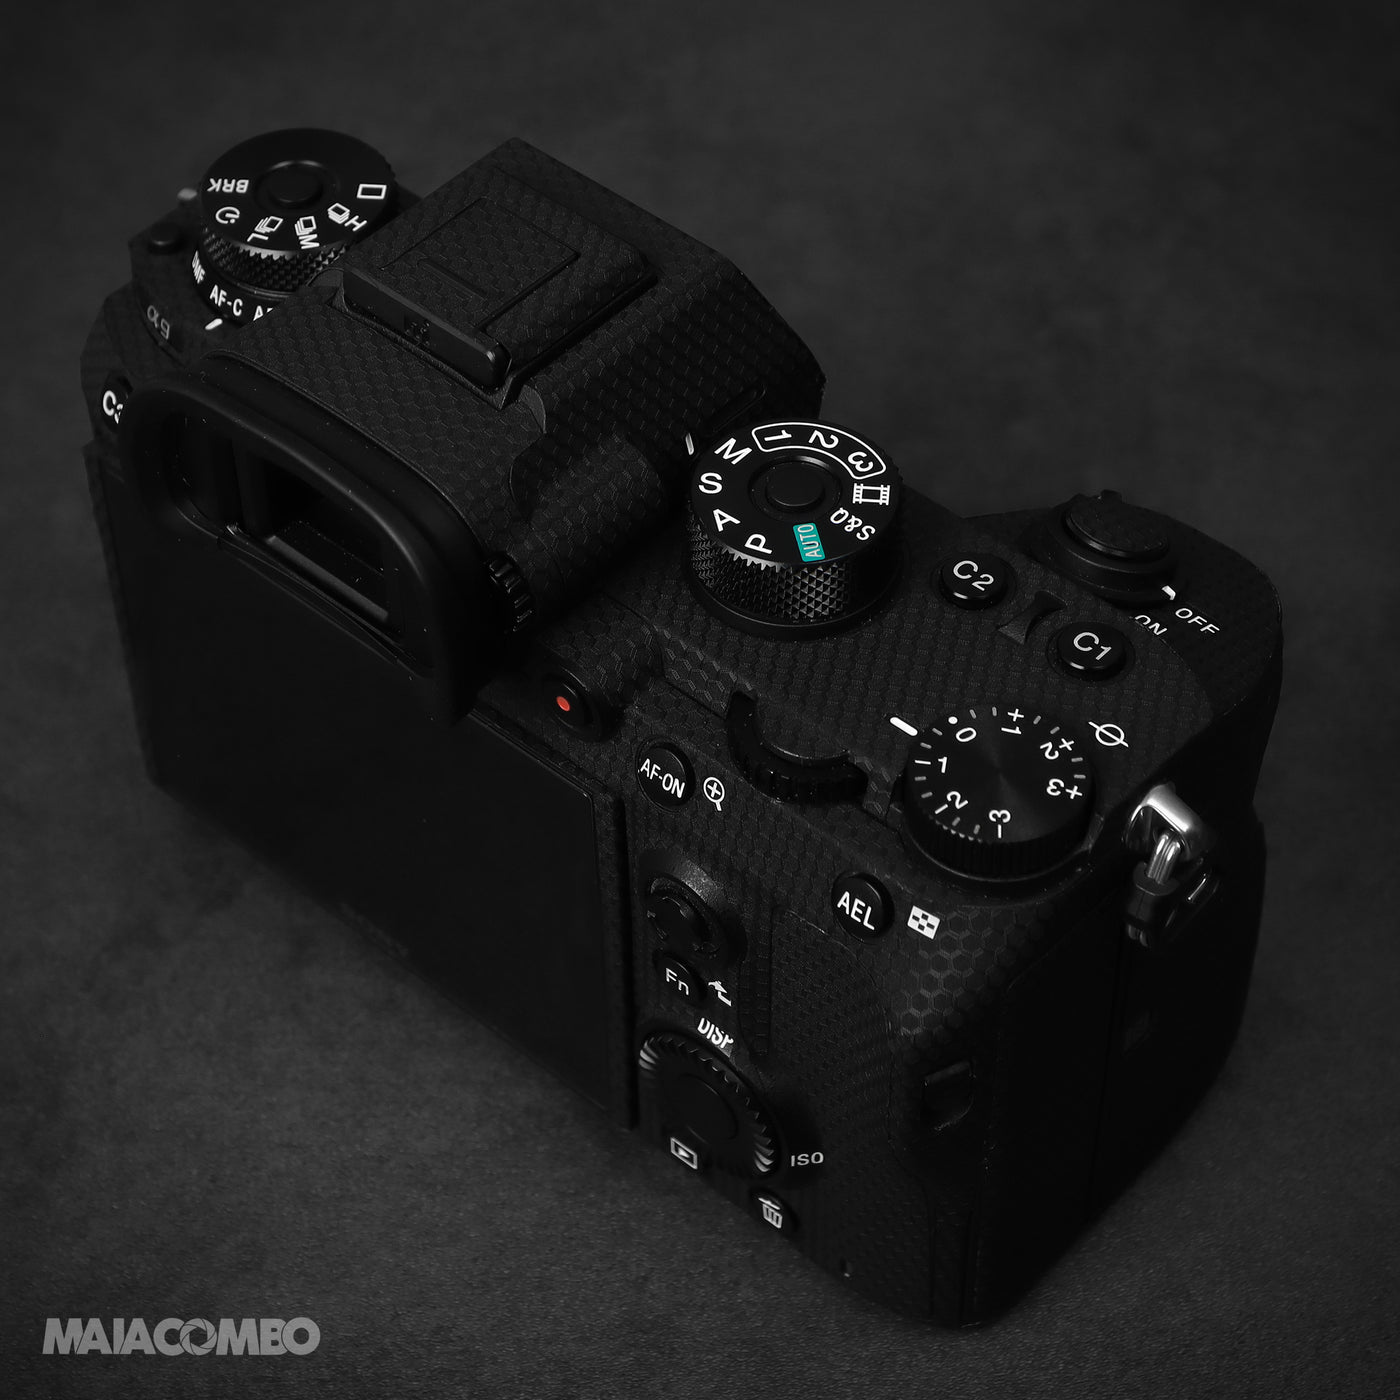 SONY A9 Camera Skin - MAIACOMBO